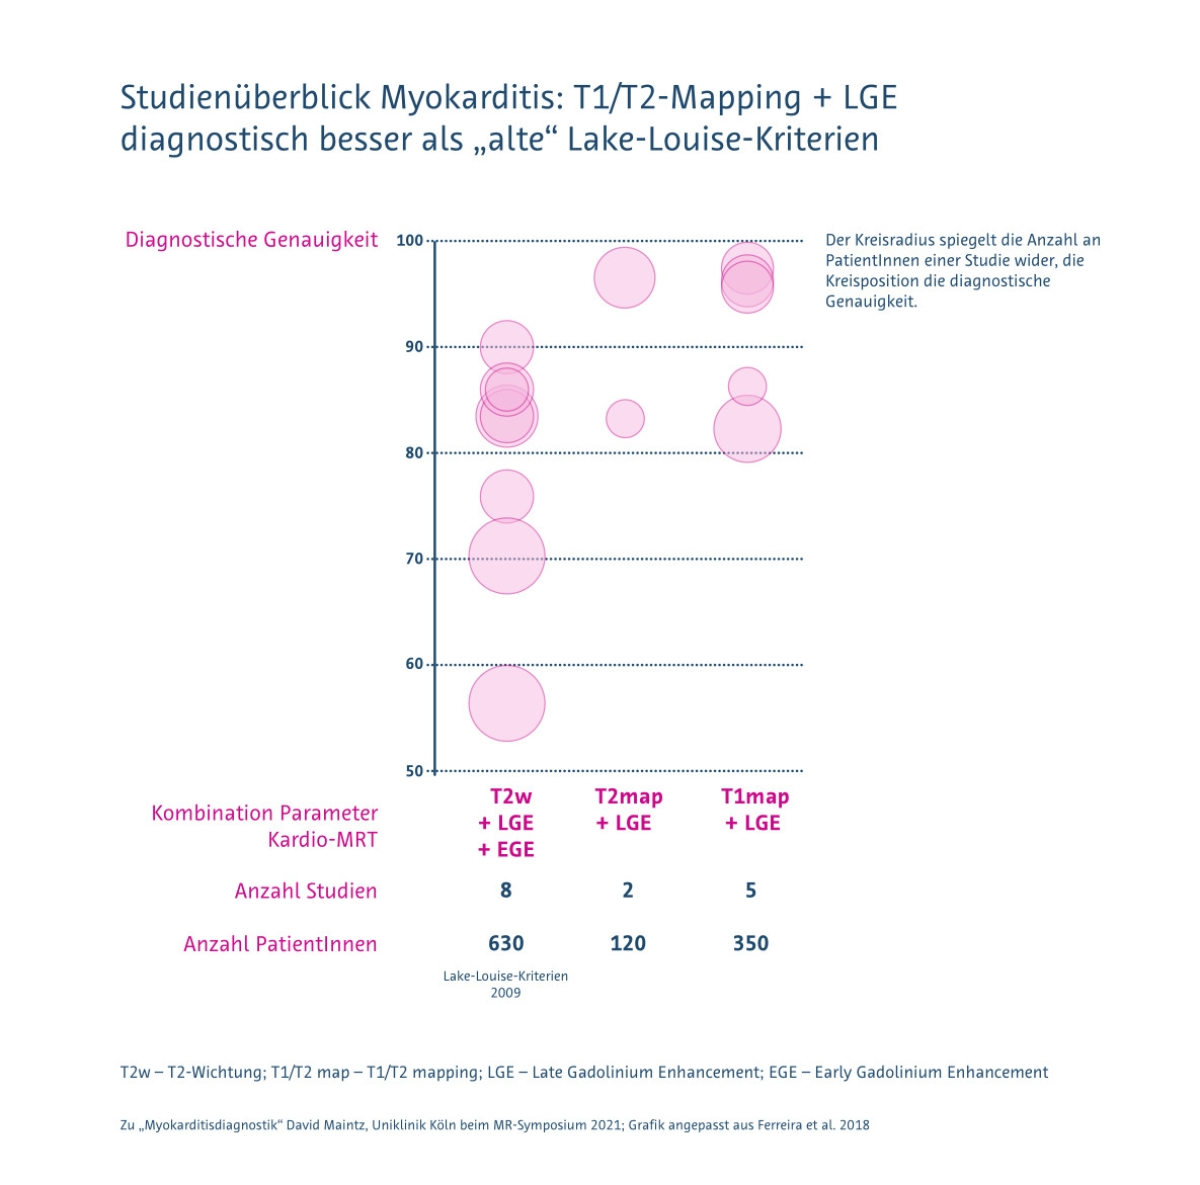 Studienüberblick Myokarditis: T1/T2-Mappin plus LGE diagnostisch besser als Lake-Louise-Kriterien von 2009